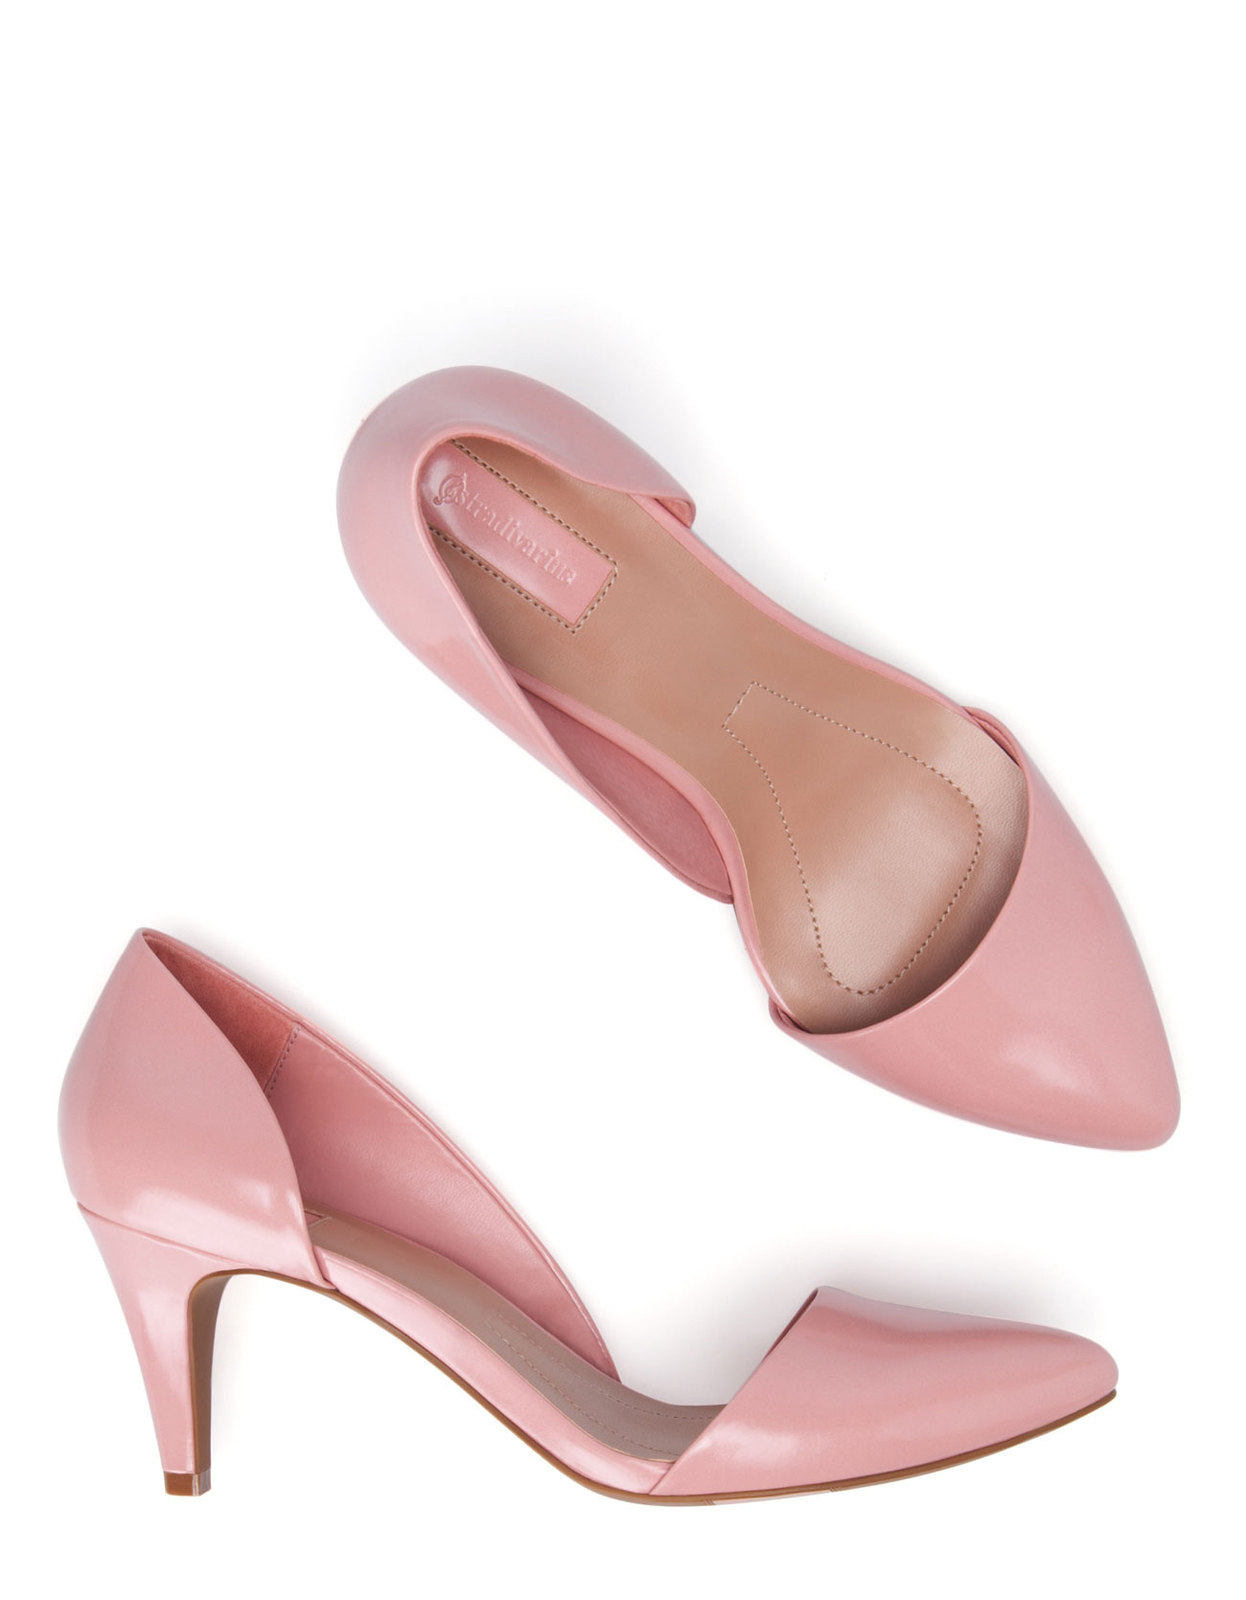 Stradivarius rózsaszín magassarkú cipő 2014.3.21 fotója